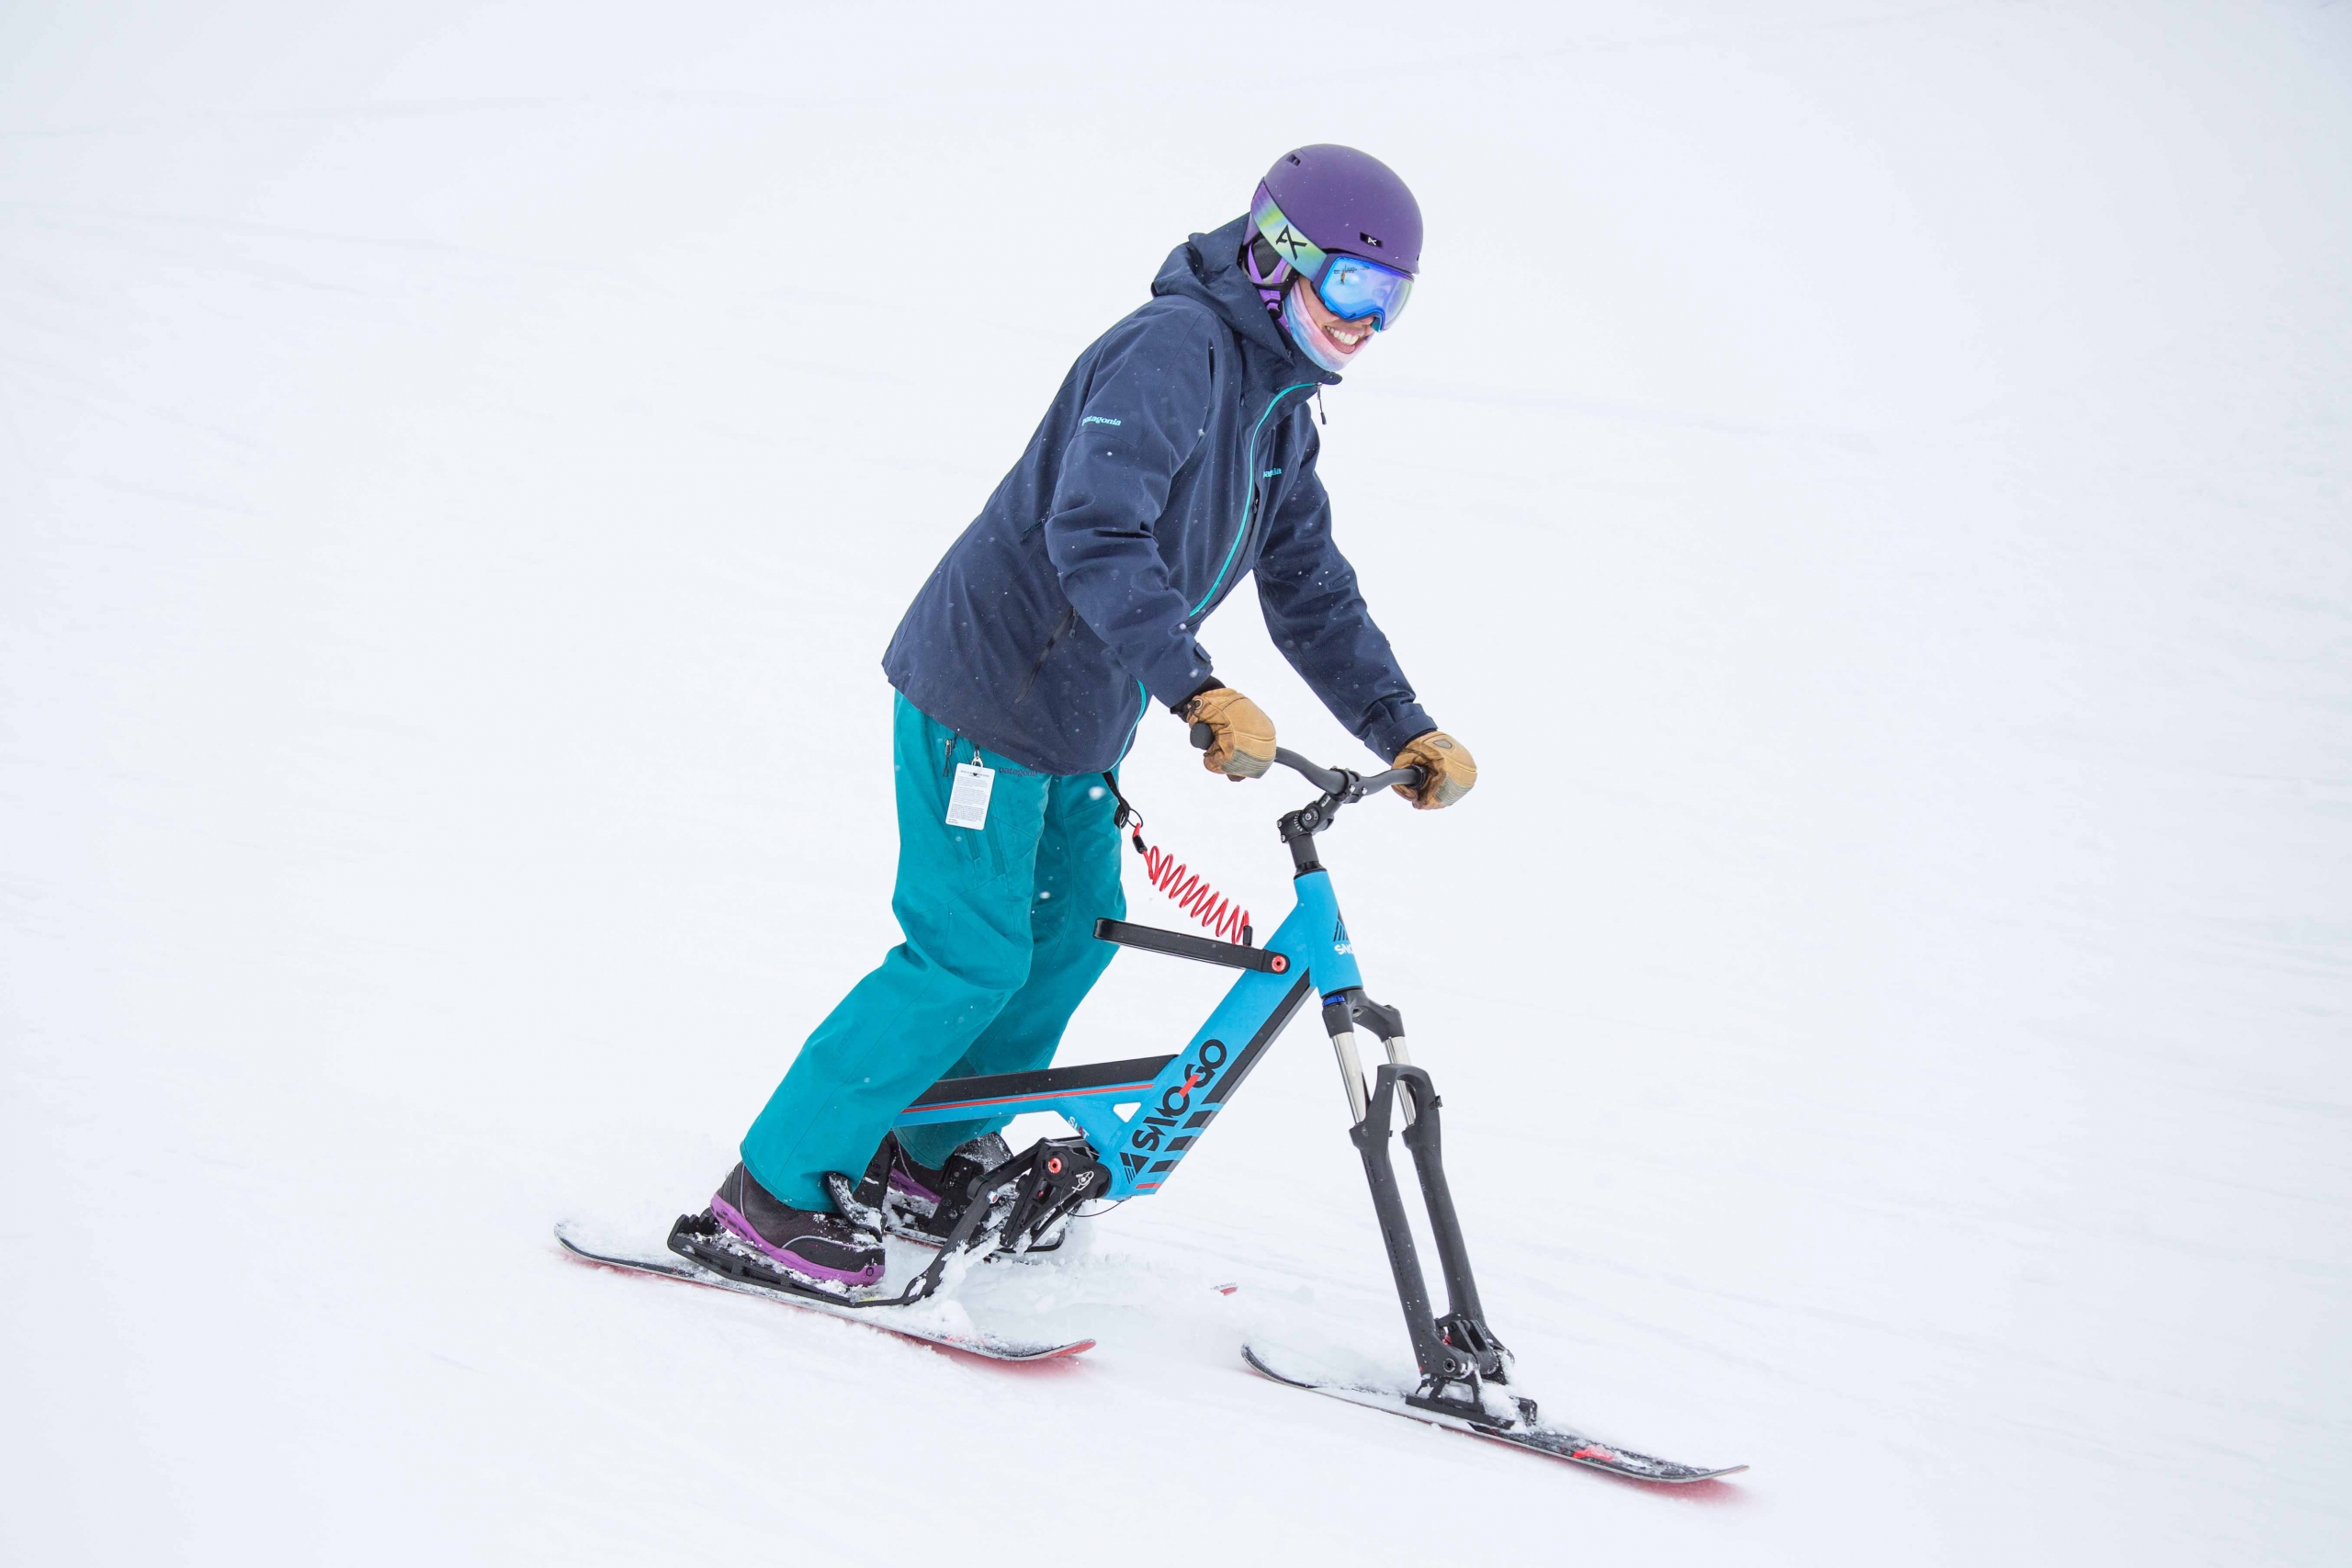 A sno-go rider on the ski hill